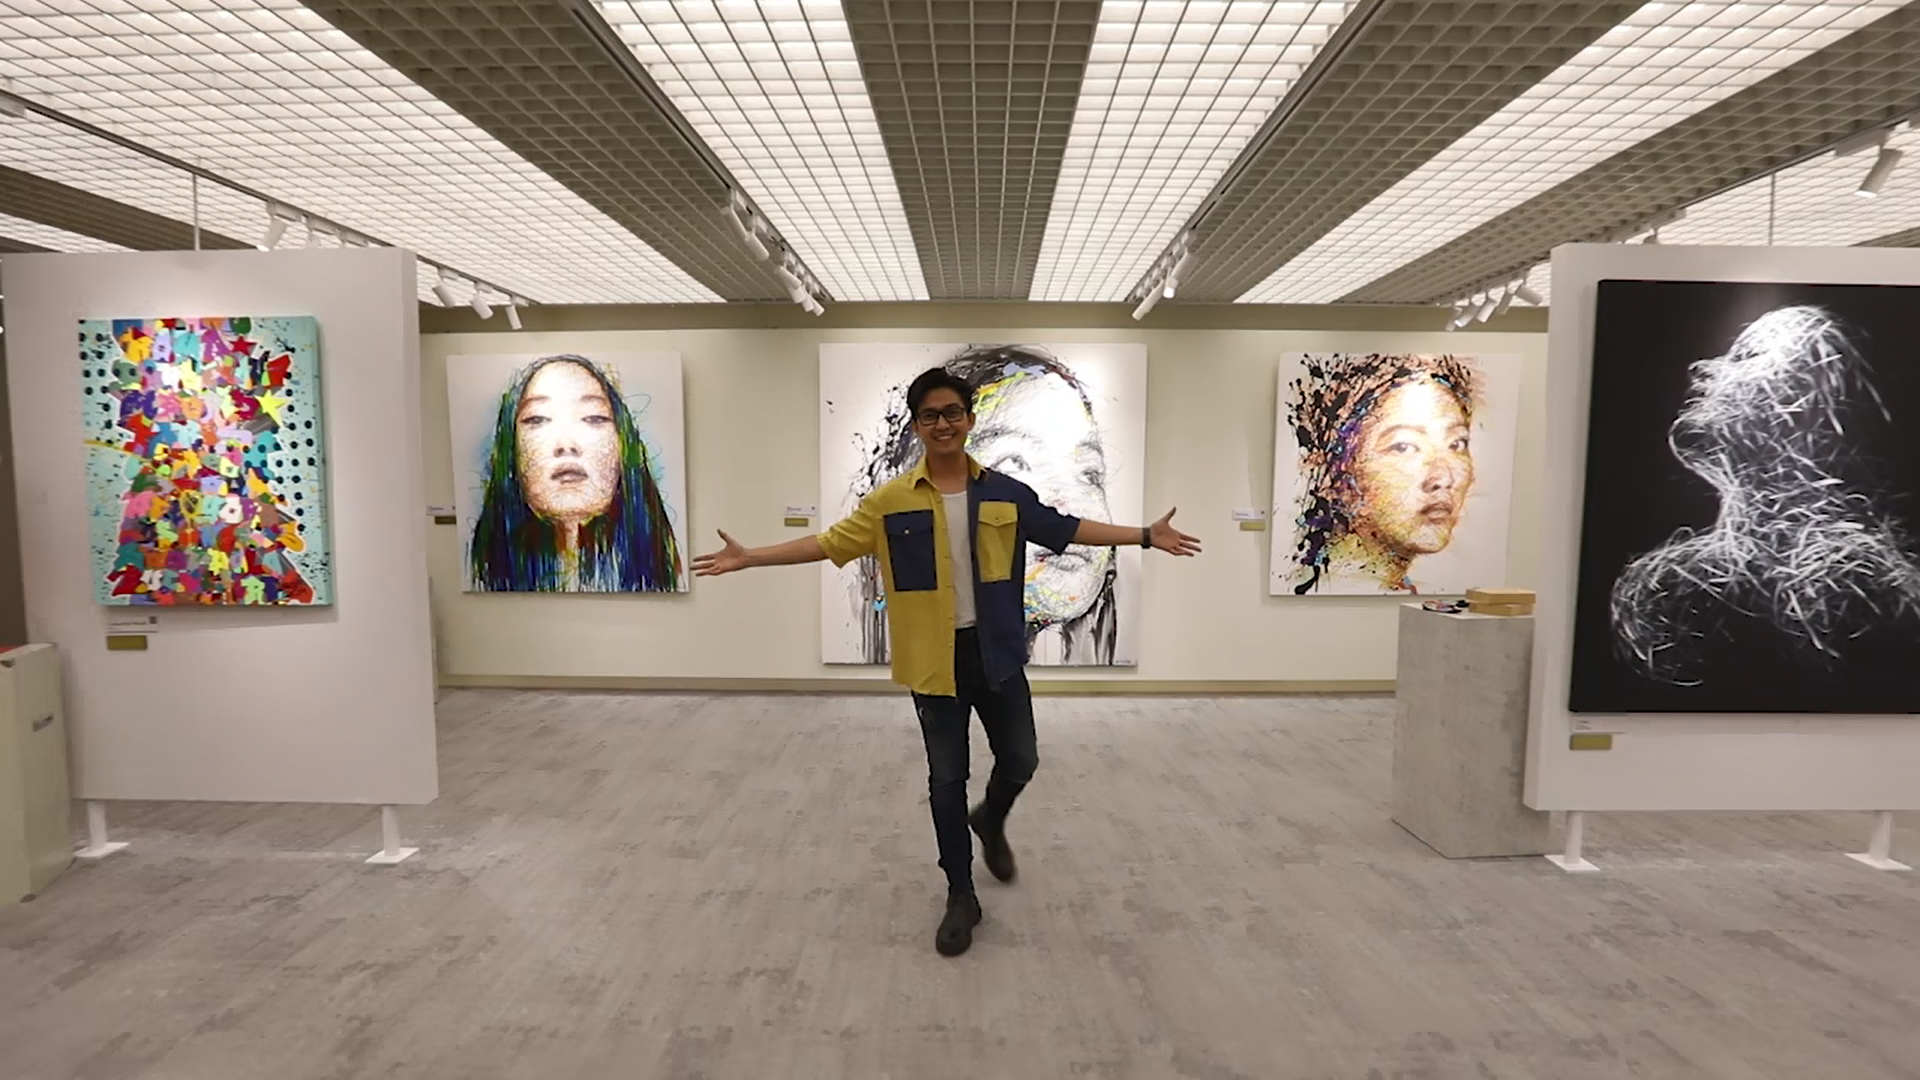 MC Quốc Bảo “catwalk” trong không gian đầy ảnh sáng nghệ thuật